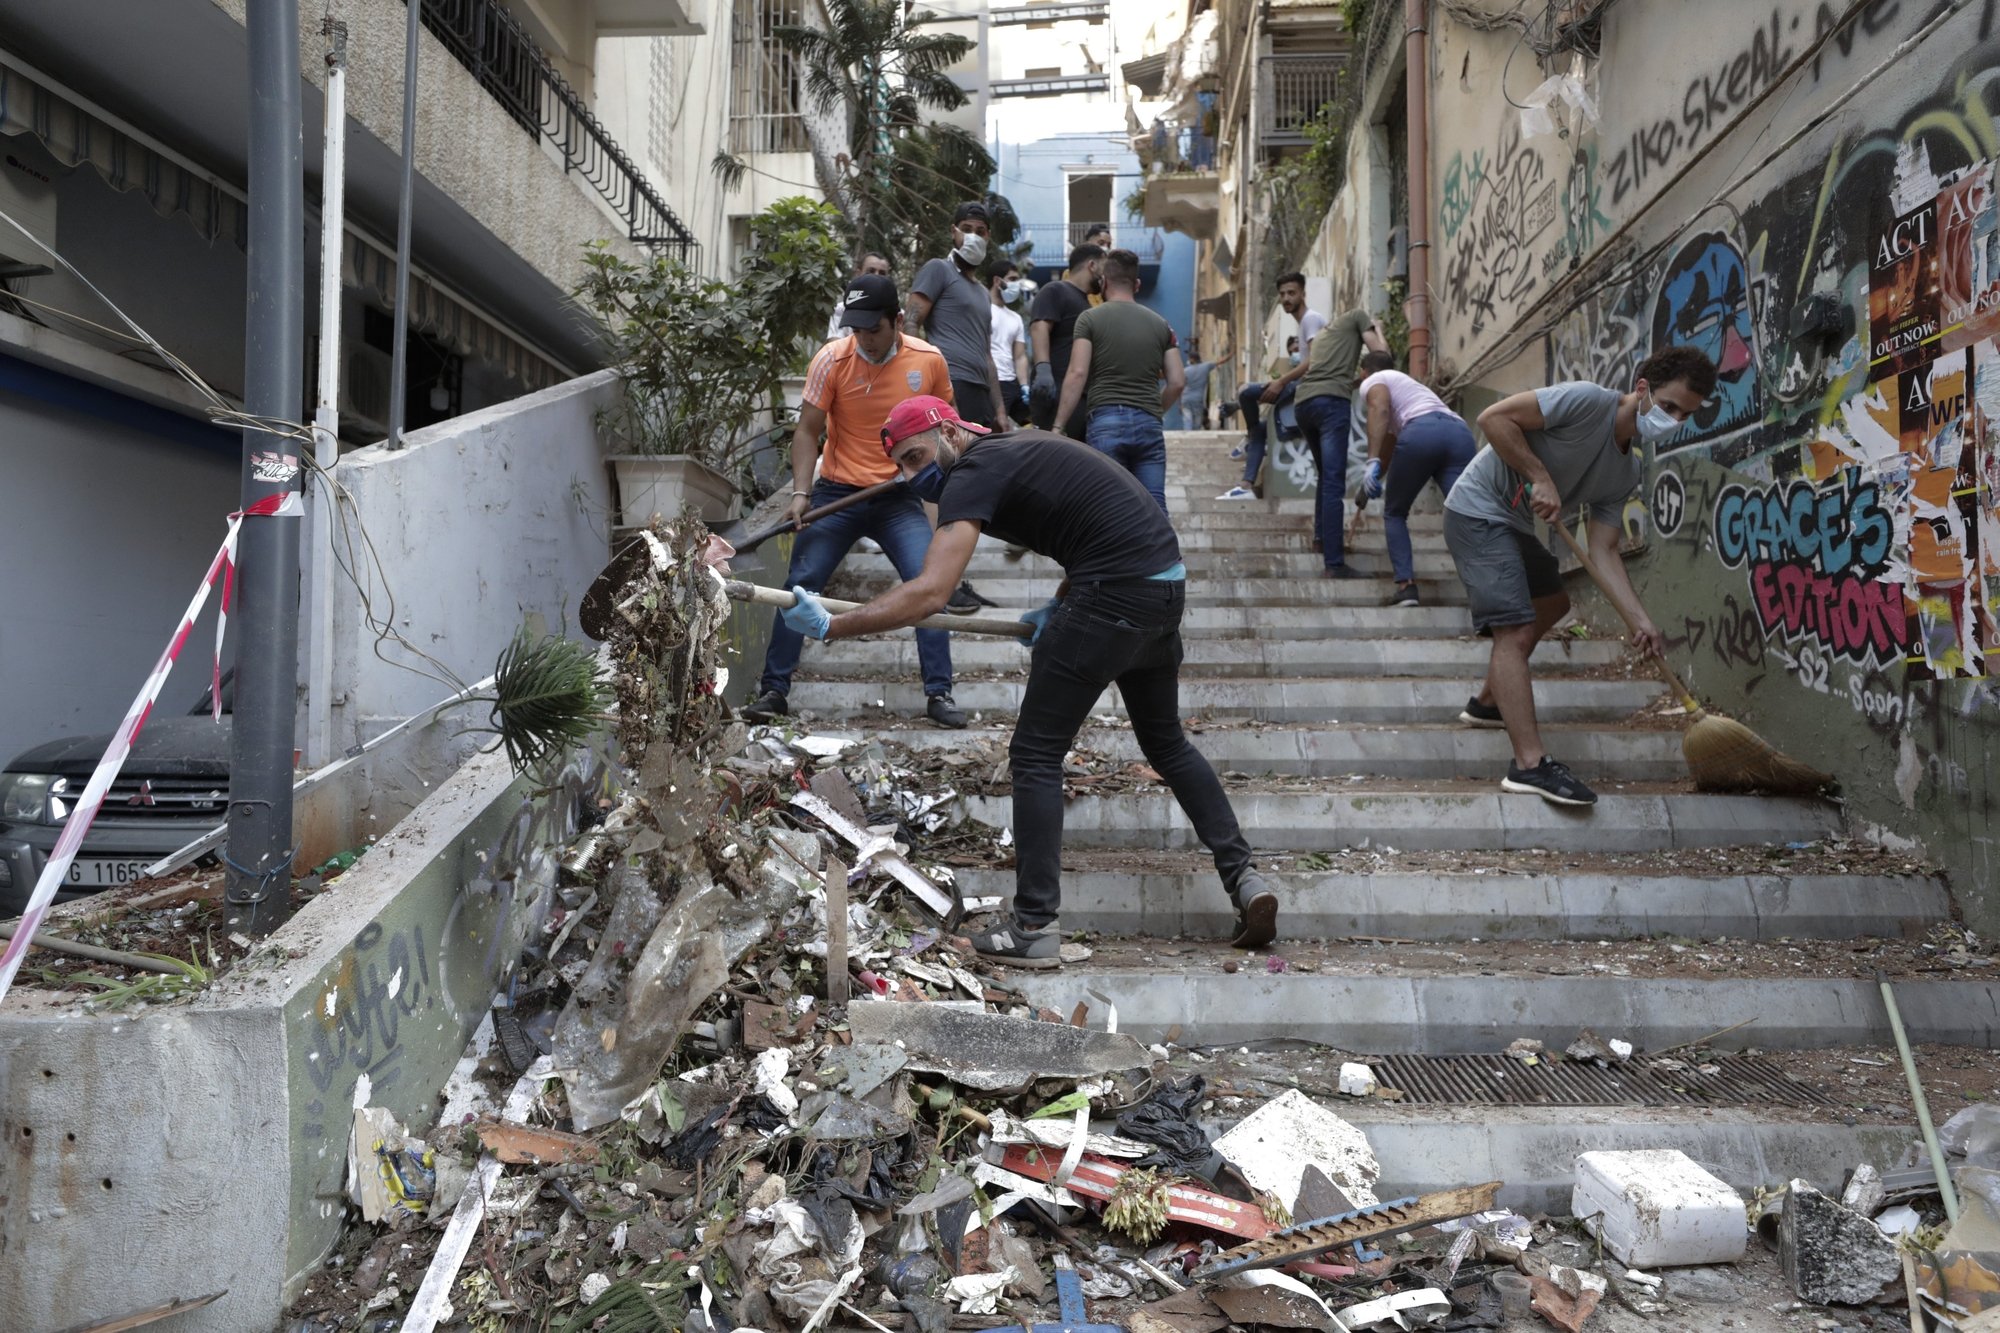 Selon la Nyonnaise Verene Kairallah, les jeunes Libanais prennent le balai pour déblayer les gravats, mais devraient enchaîner avec "un coup de balai du côté des dirigeants".